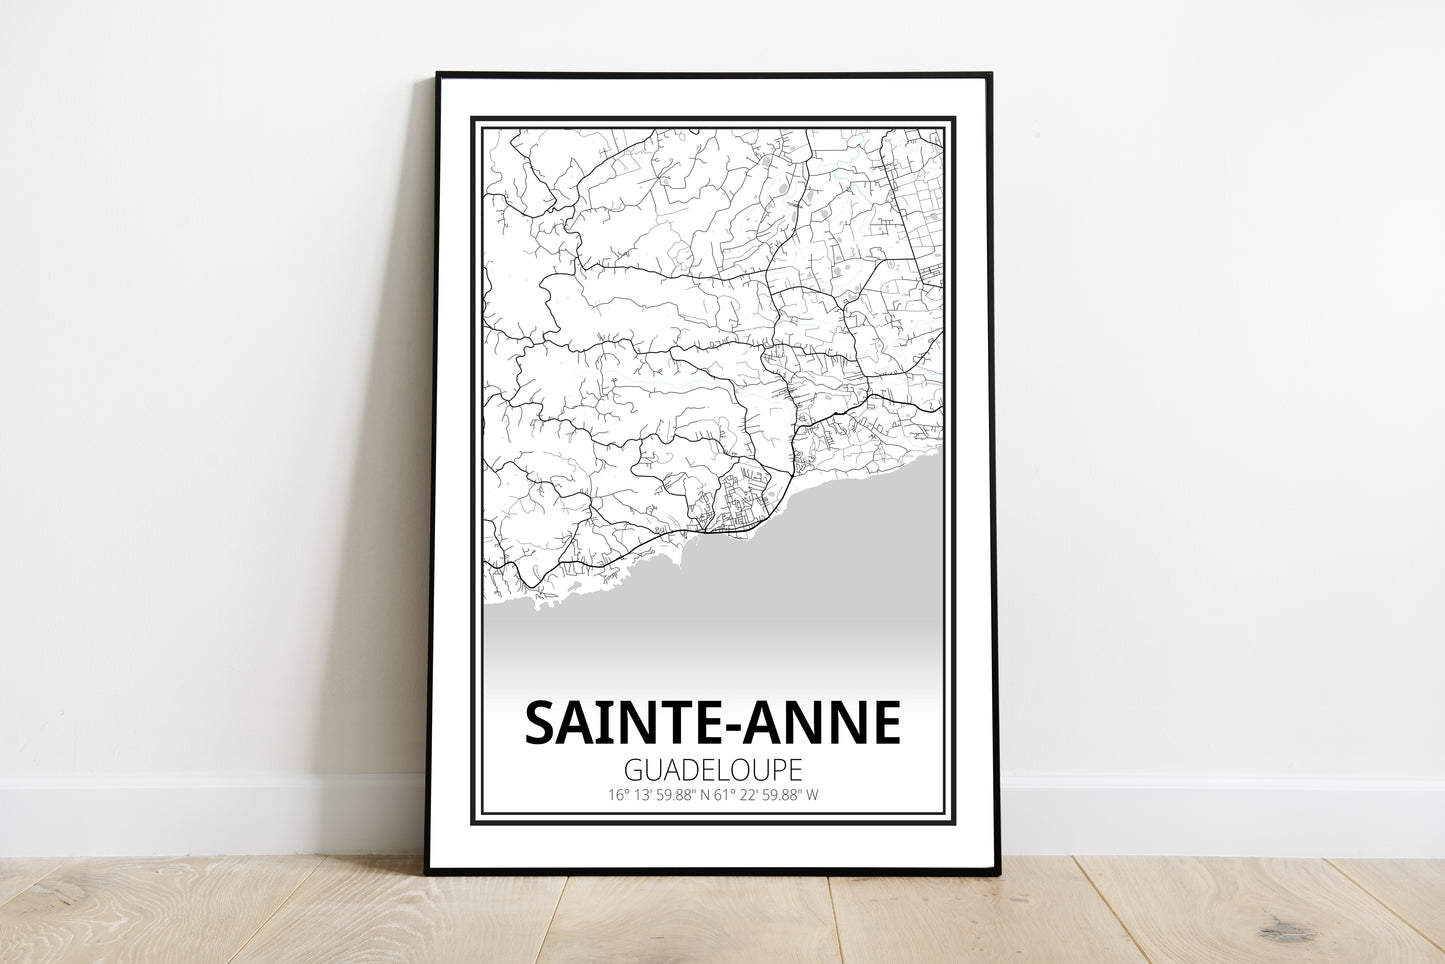 Sainte-Anne - Guadeloupe